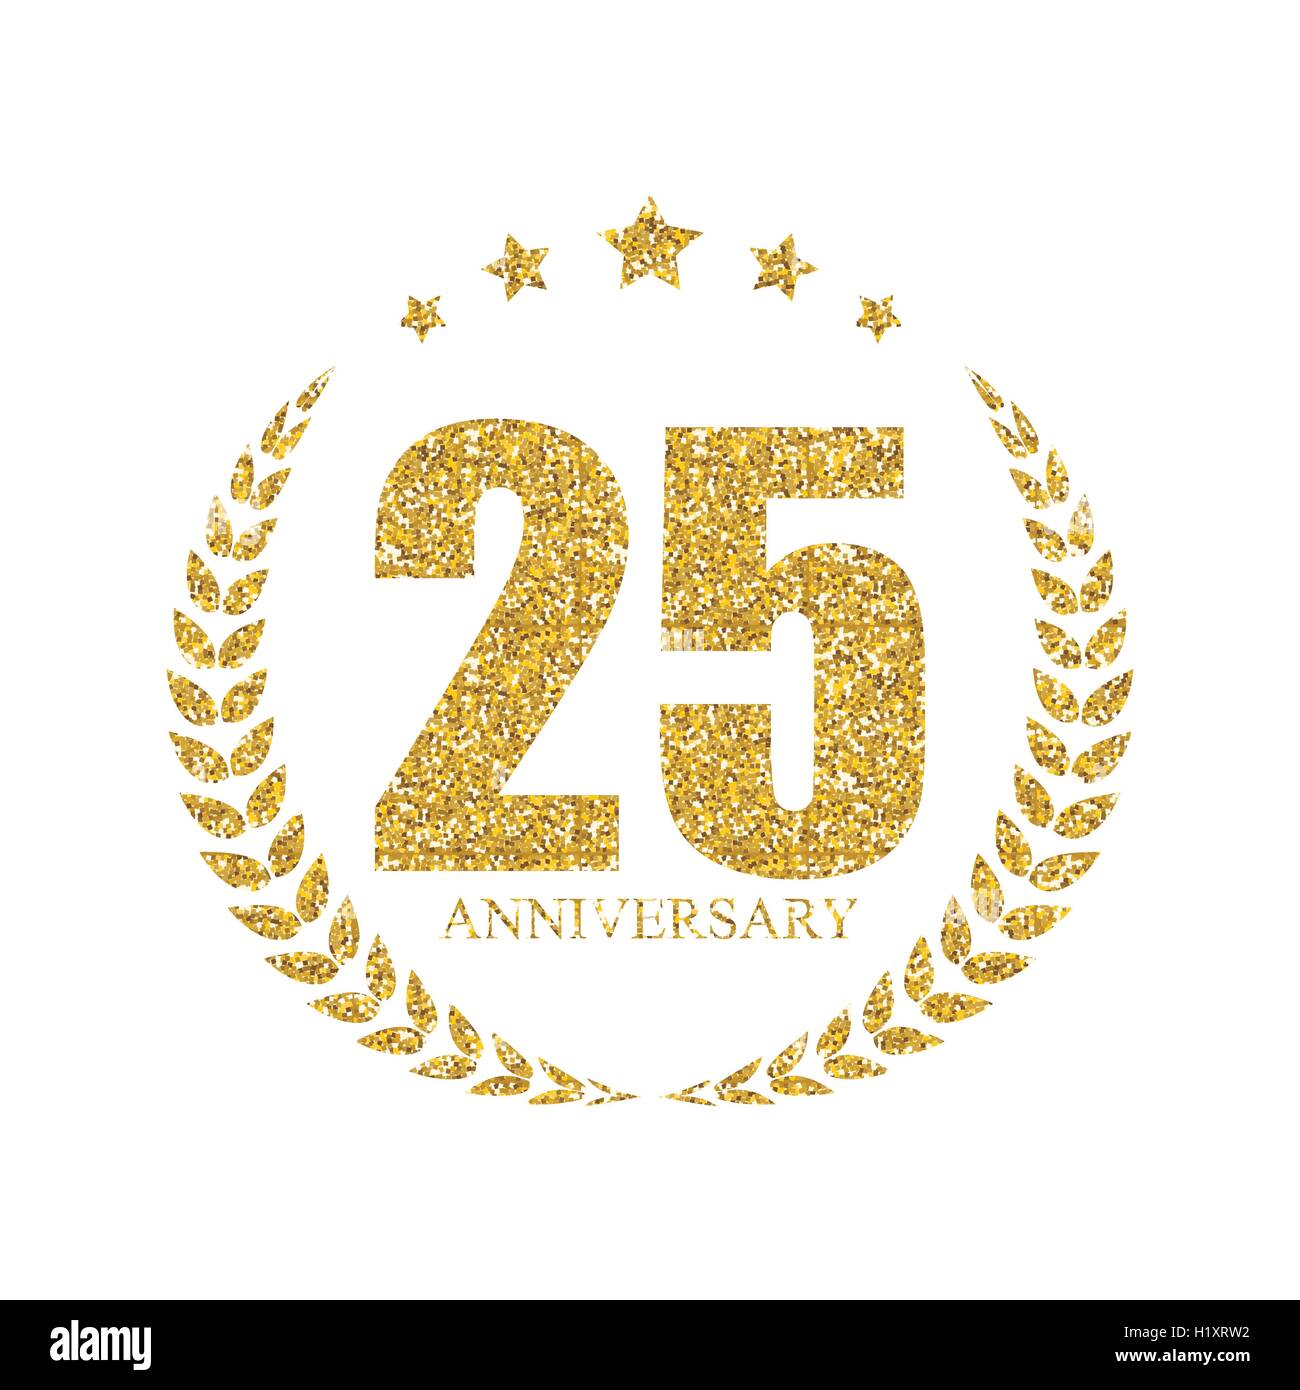 25 Ans Anniversaire Logo Du Modele Vector Illustration Image Vectorielle Stock Alamy